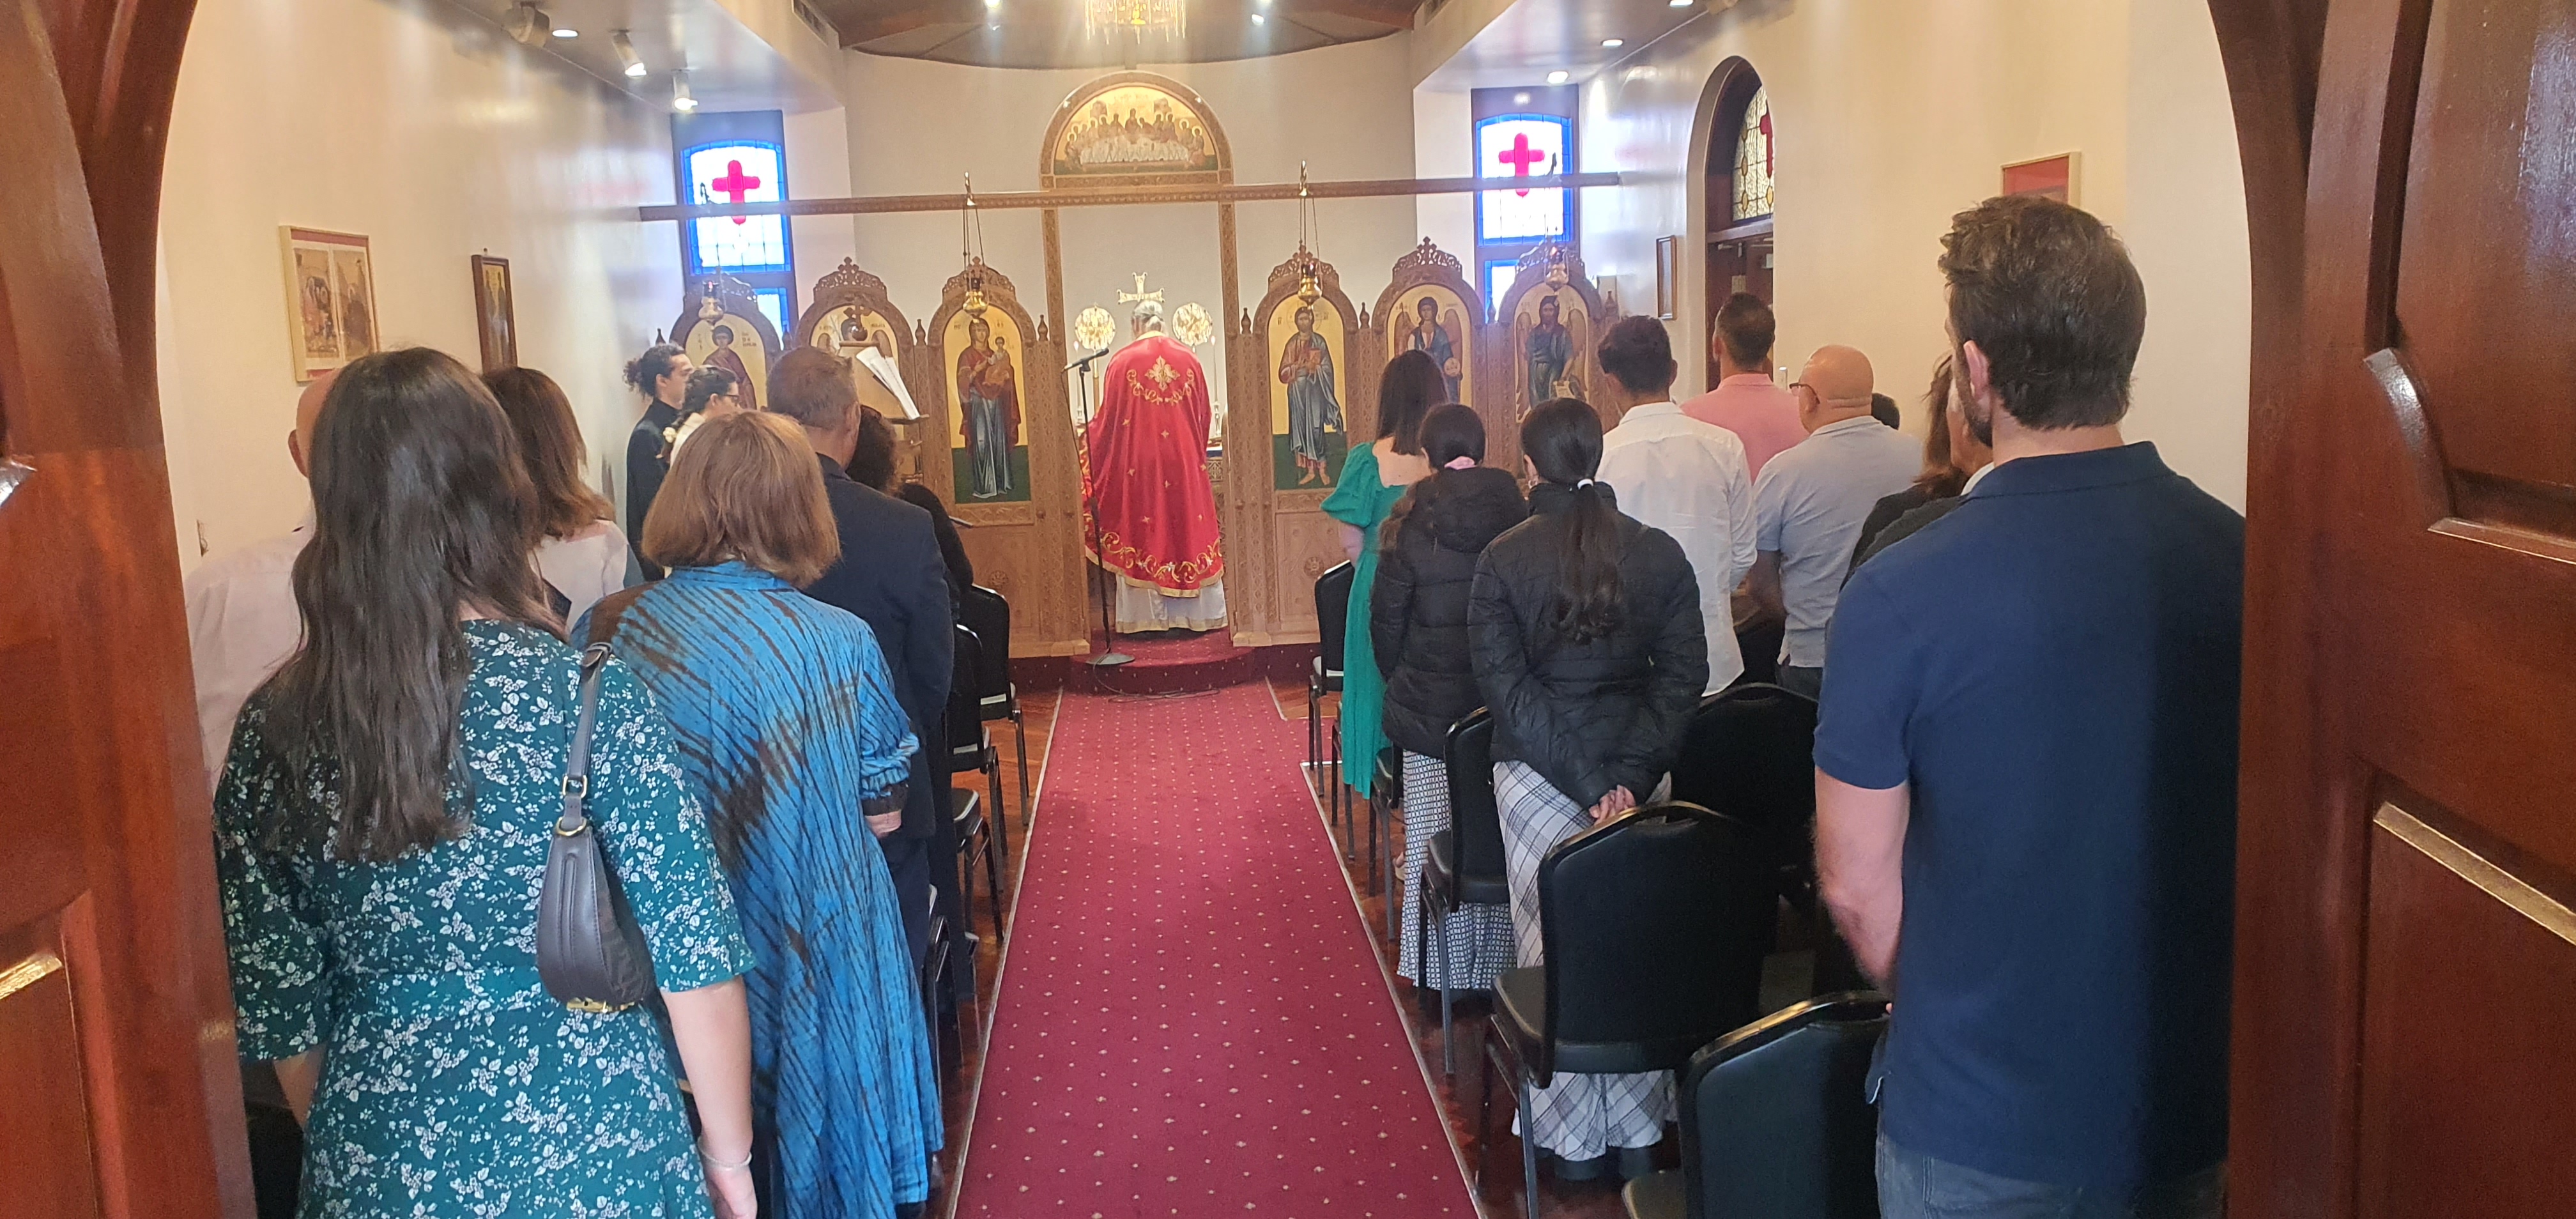 Adelaide: Parish of Saint Panteleimon in Glenelg reopens as an English-speaking parish